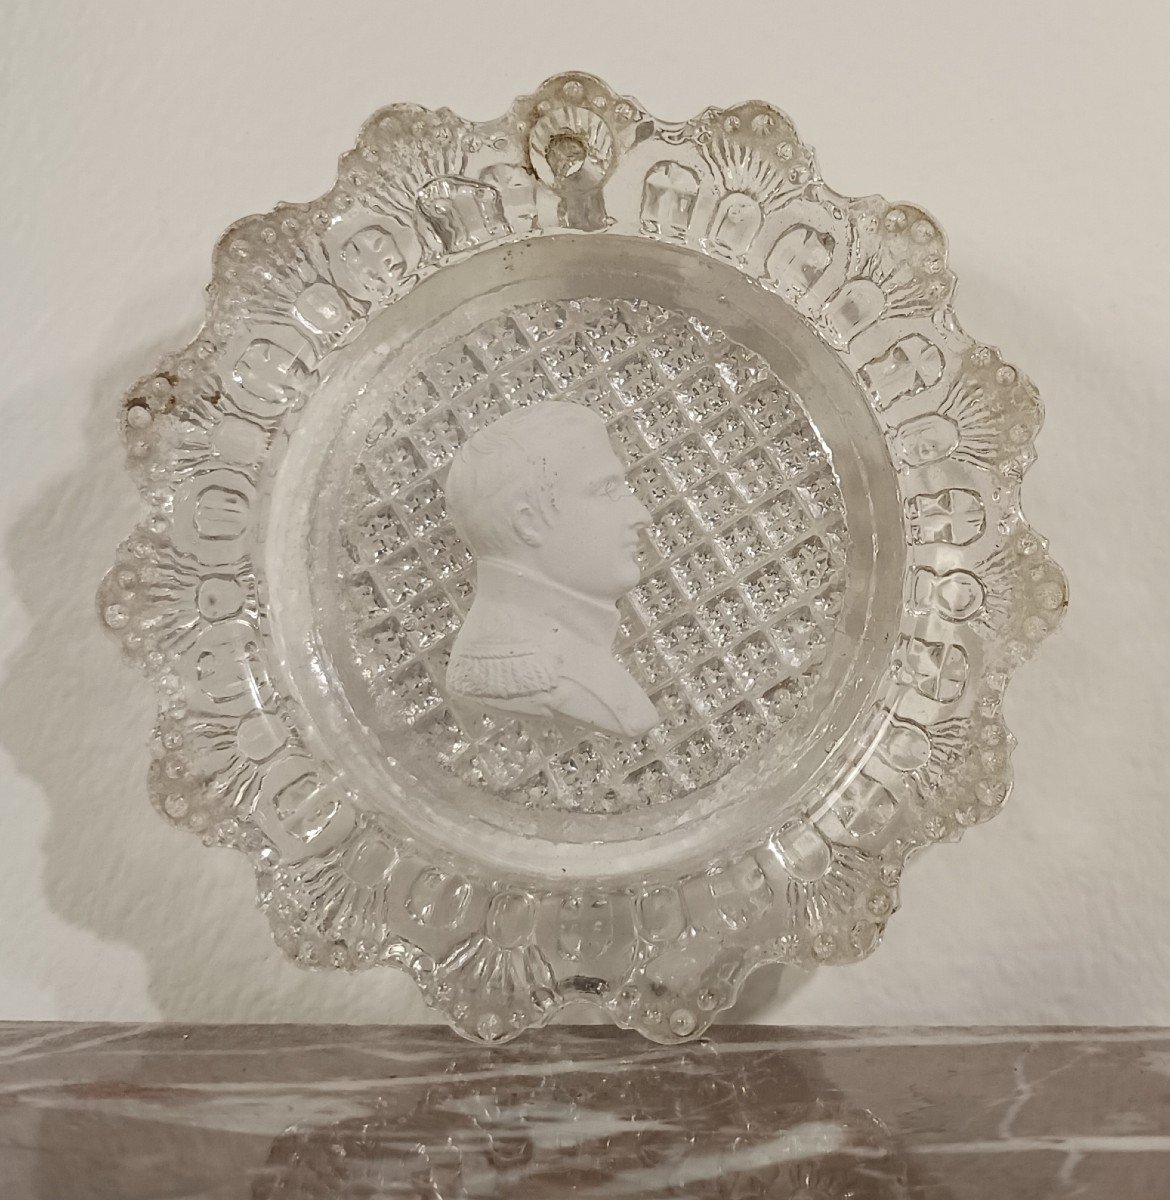 Baccarat - cristallo-cérame au profil de Napoléon en général - collection Brouwet - Empire, vers 1810